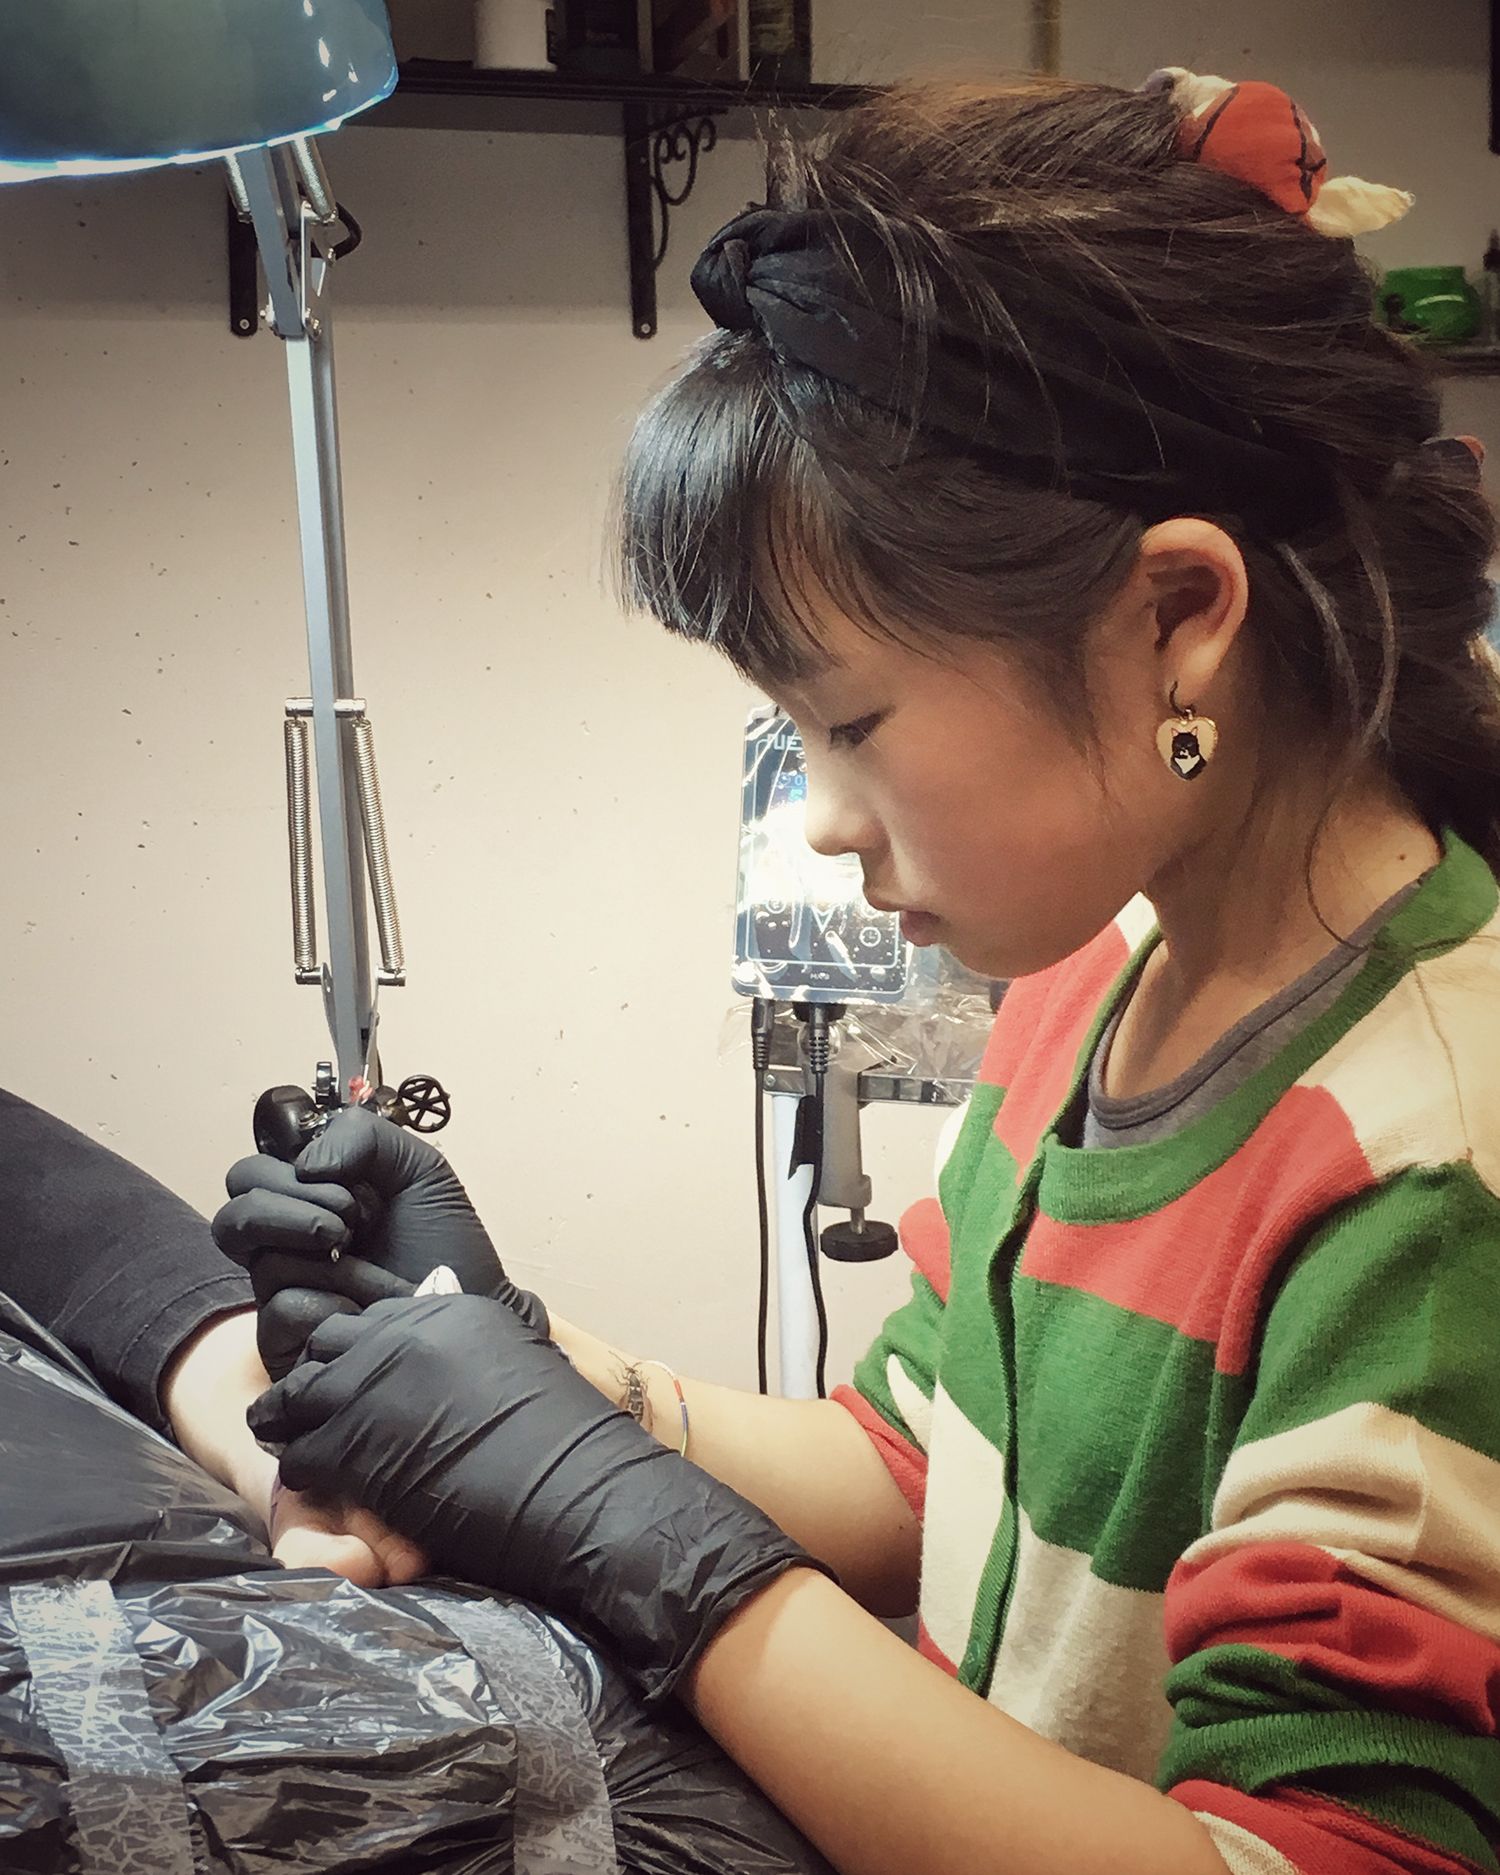 Tattoo apprentice Noko tattooing